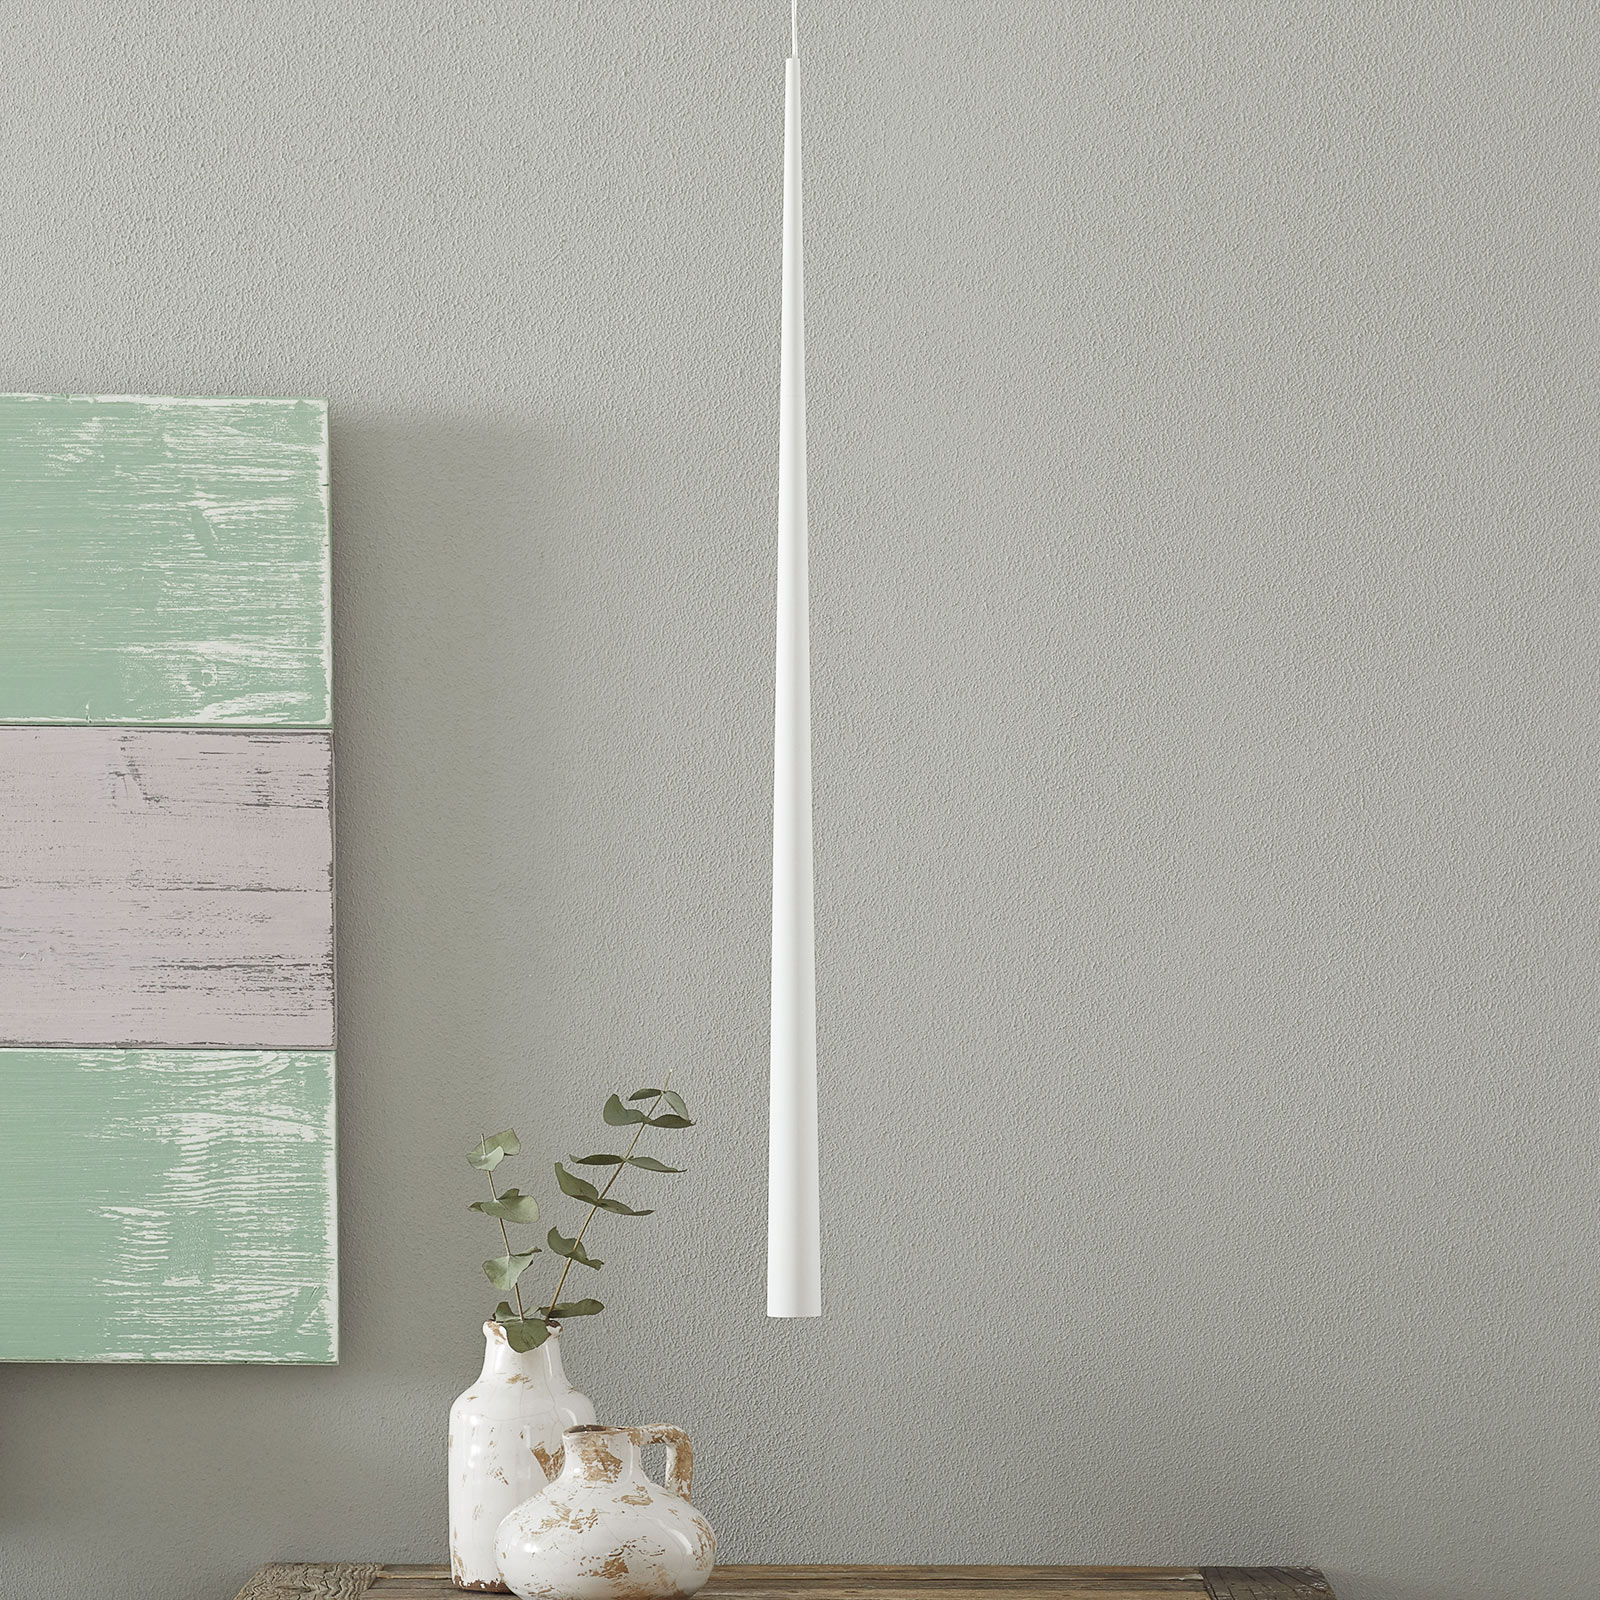 Bendis - vitka LED viseča svetilka v beli barvi